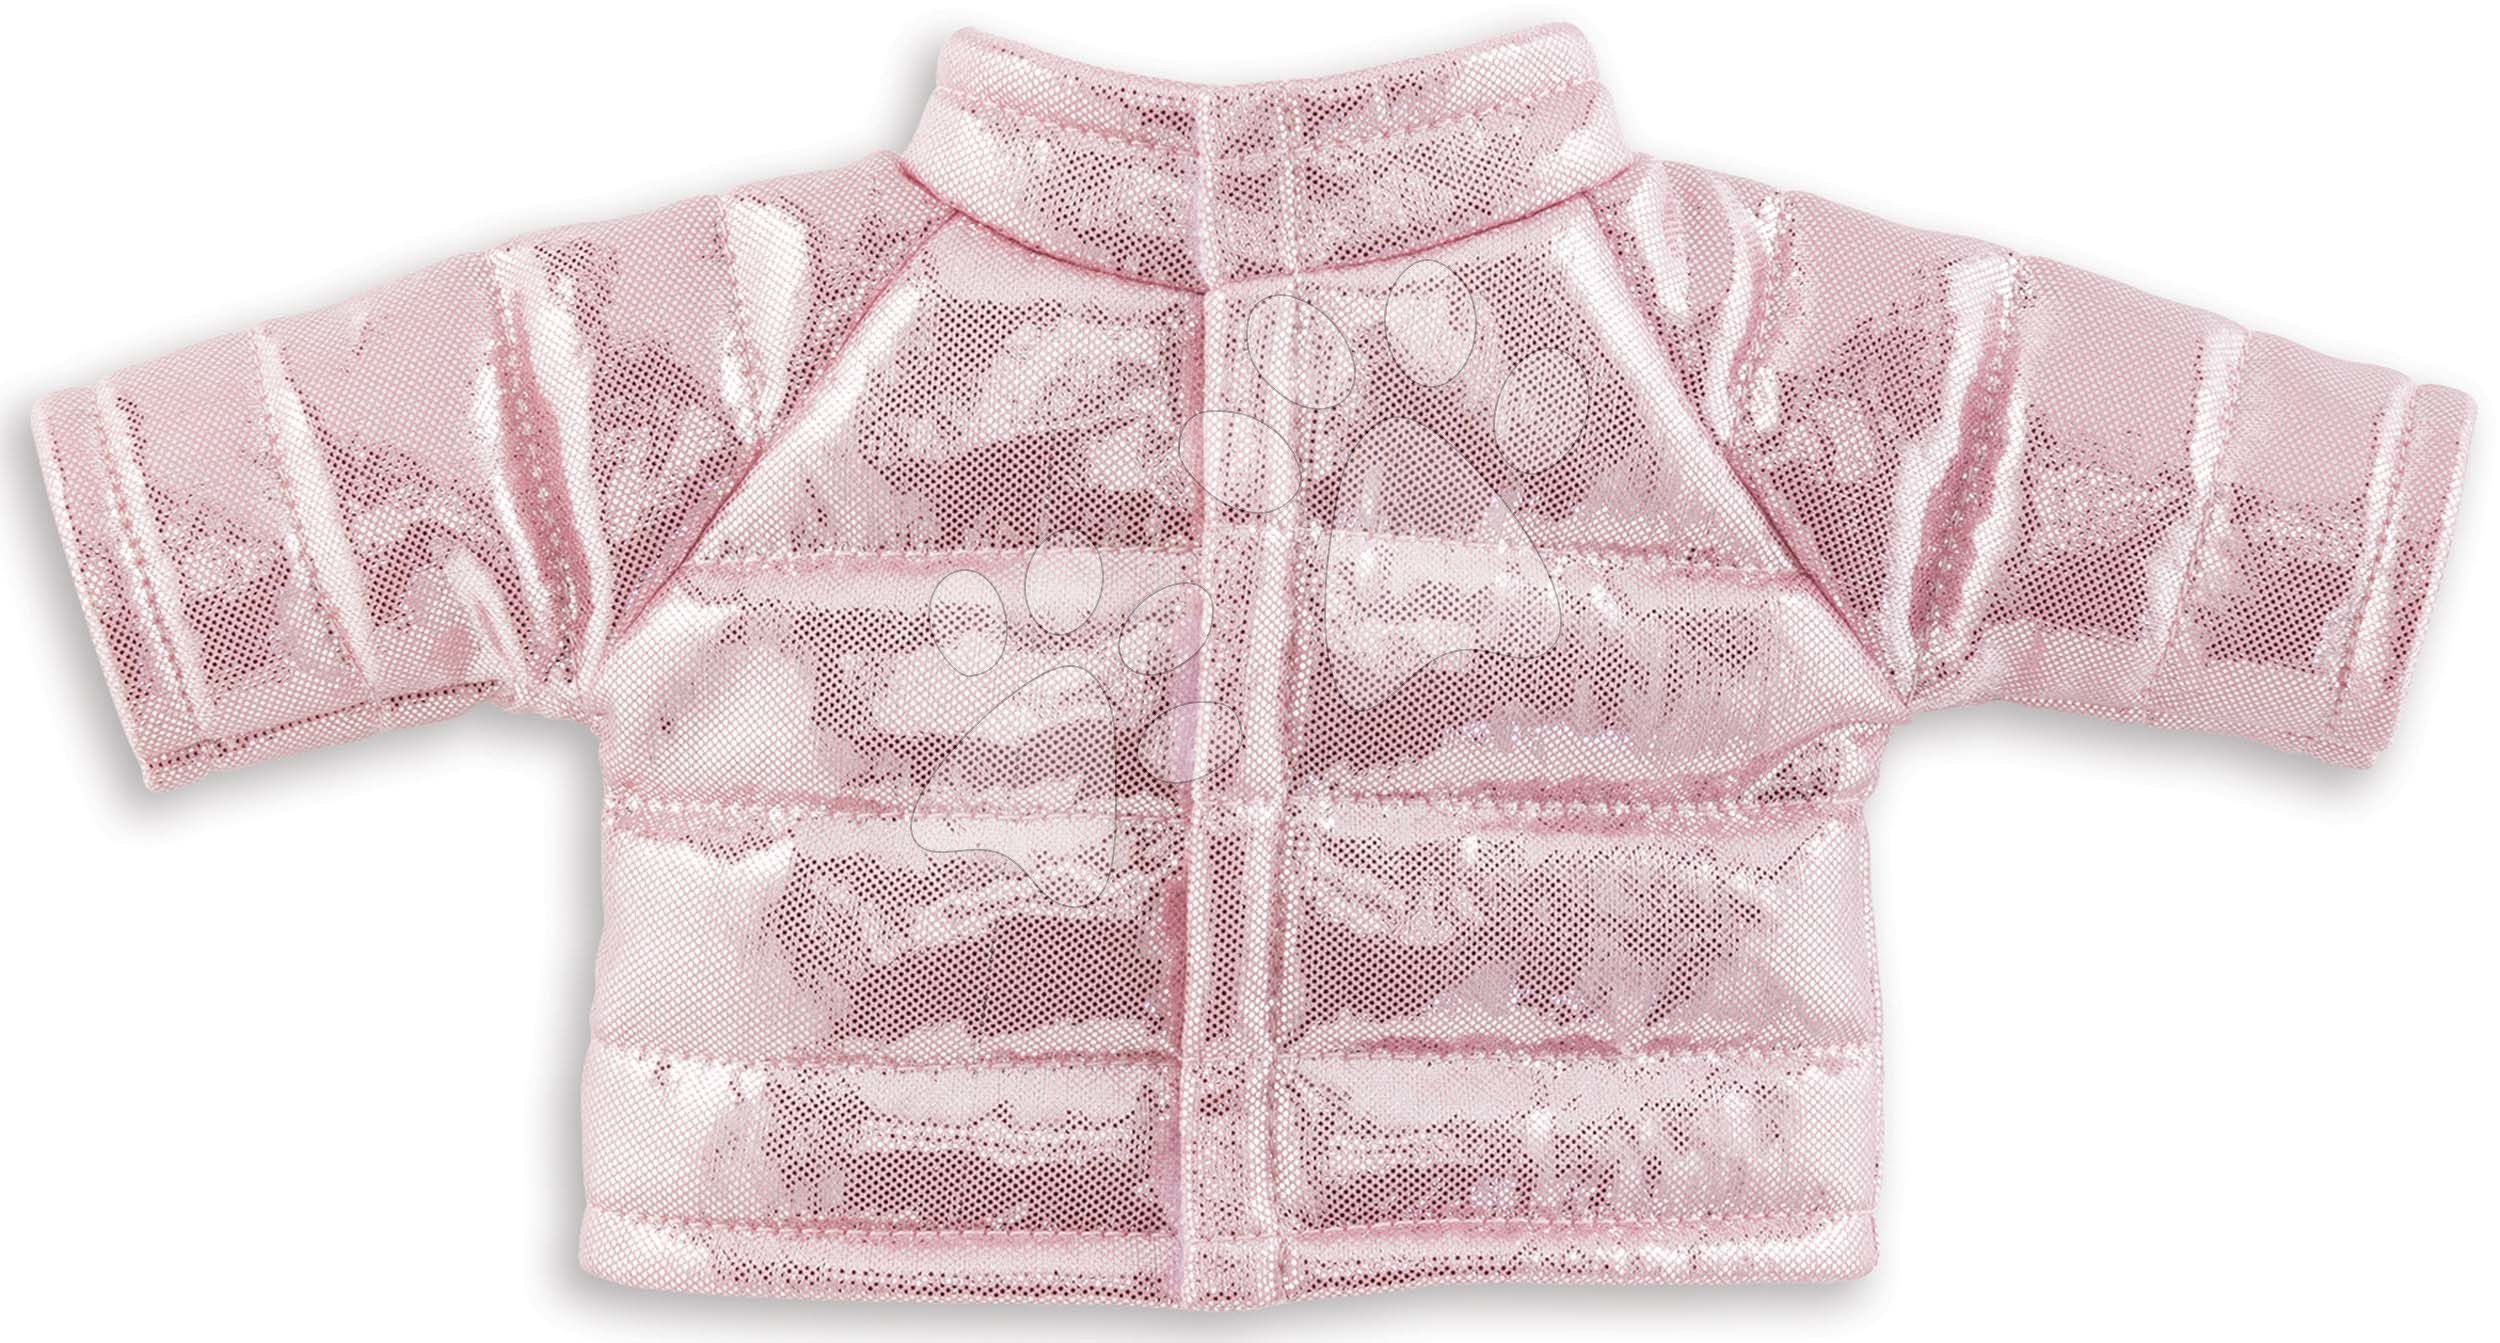 Oblečenie Padded Jacket Pink Ma Corolle pre 36 cm bábiku od 4 rokov